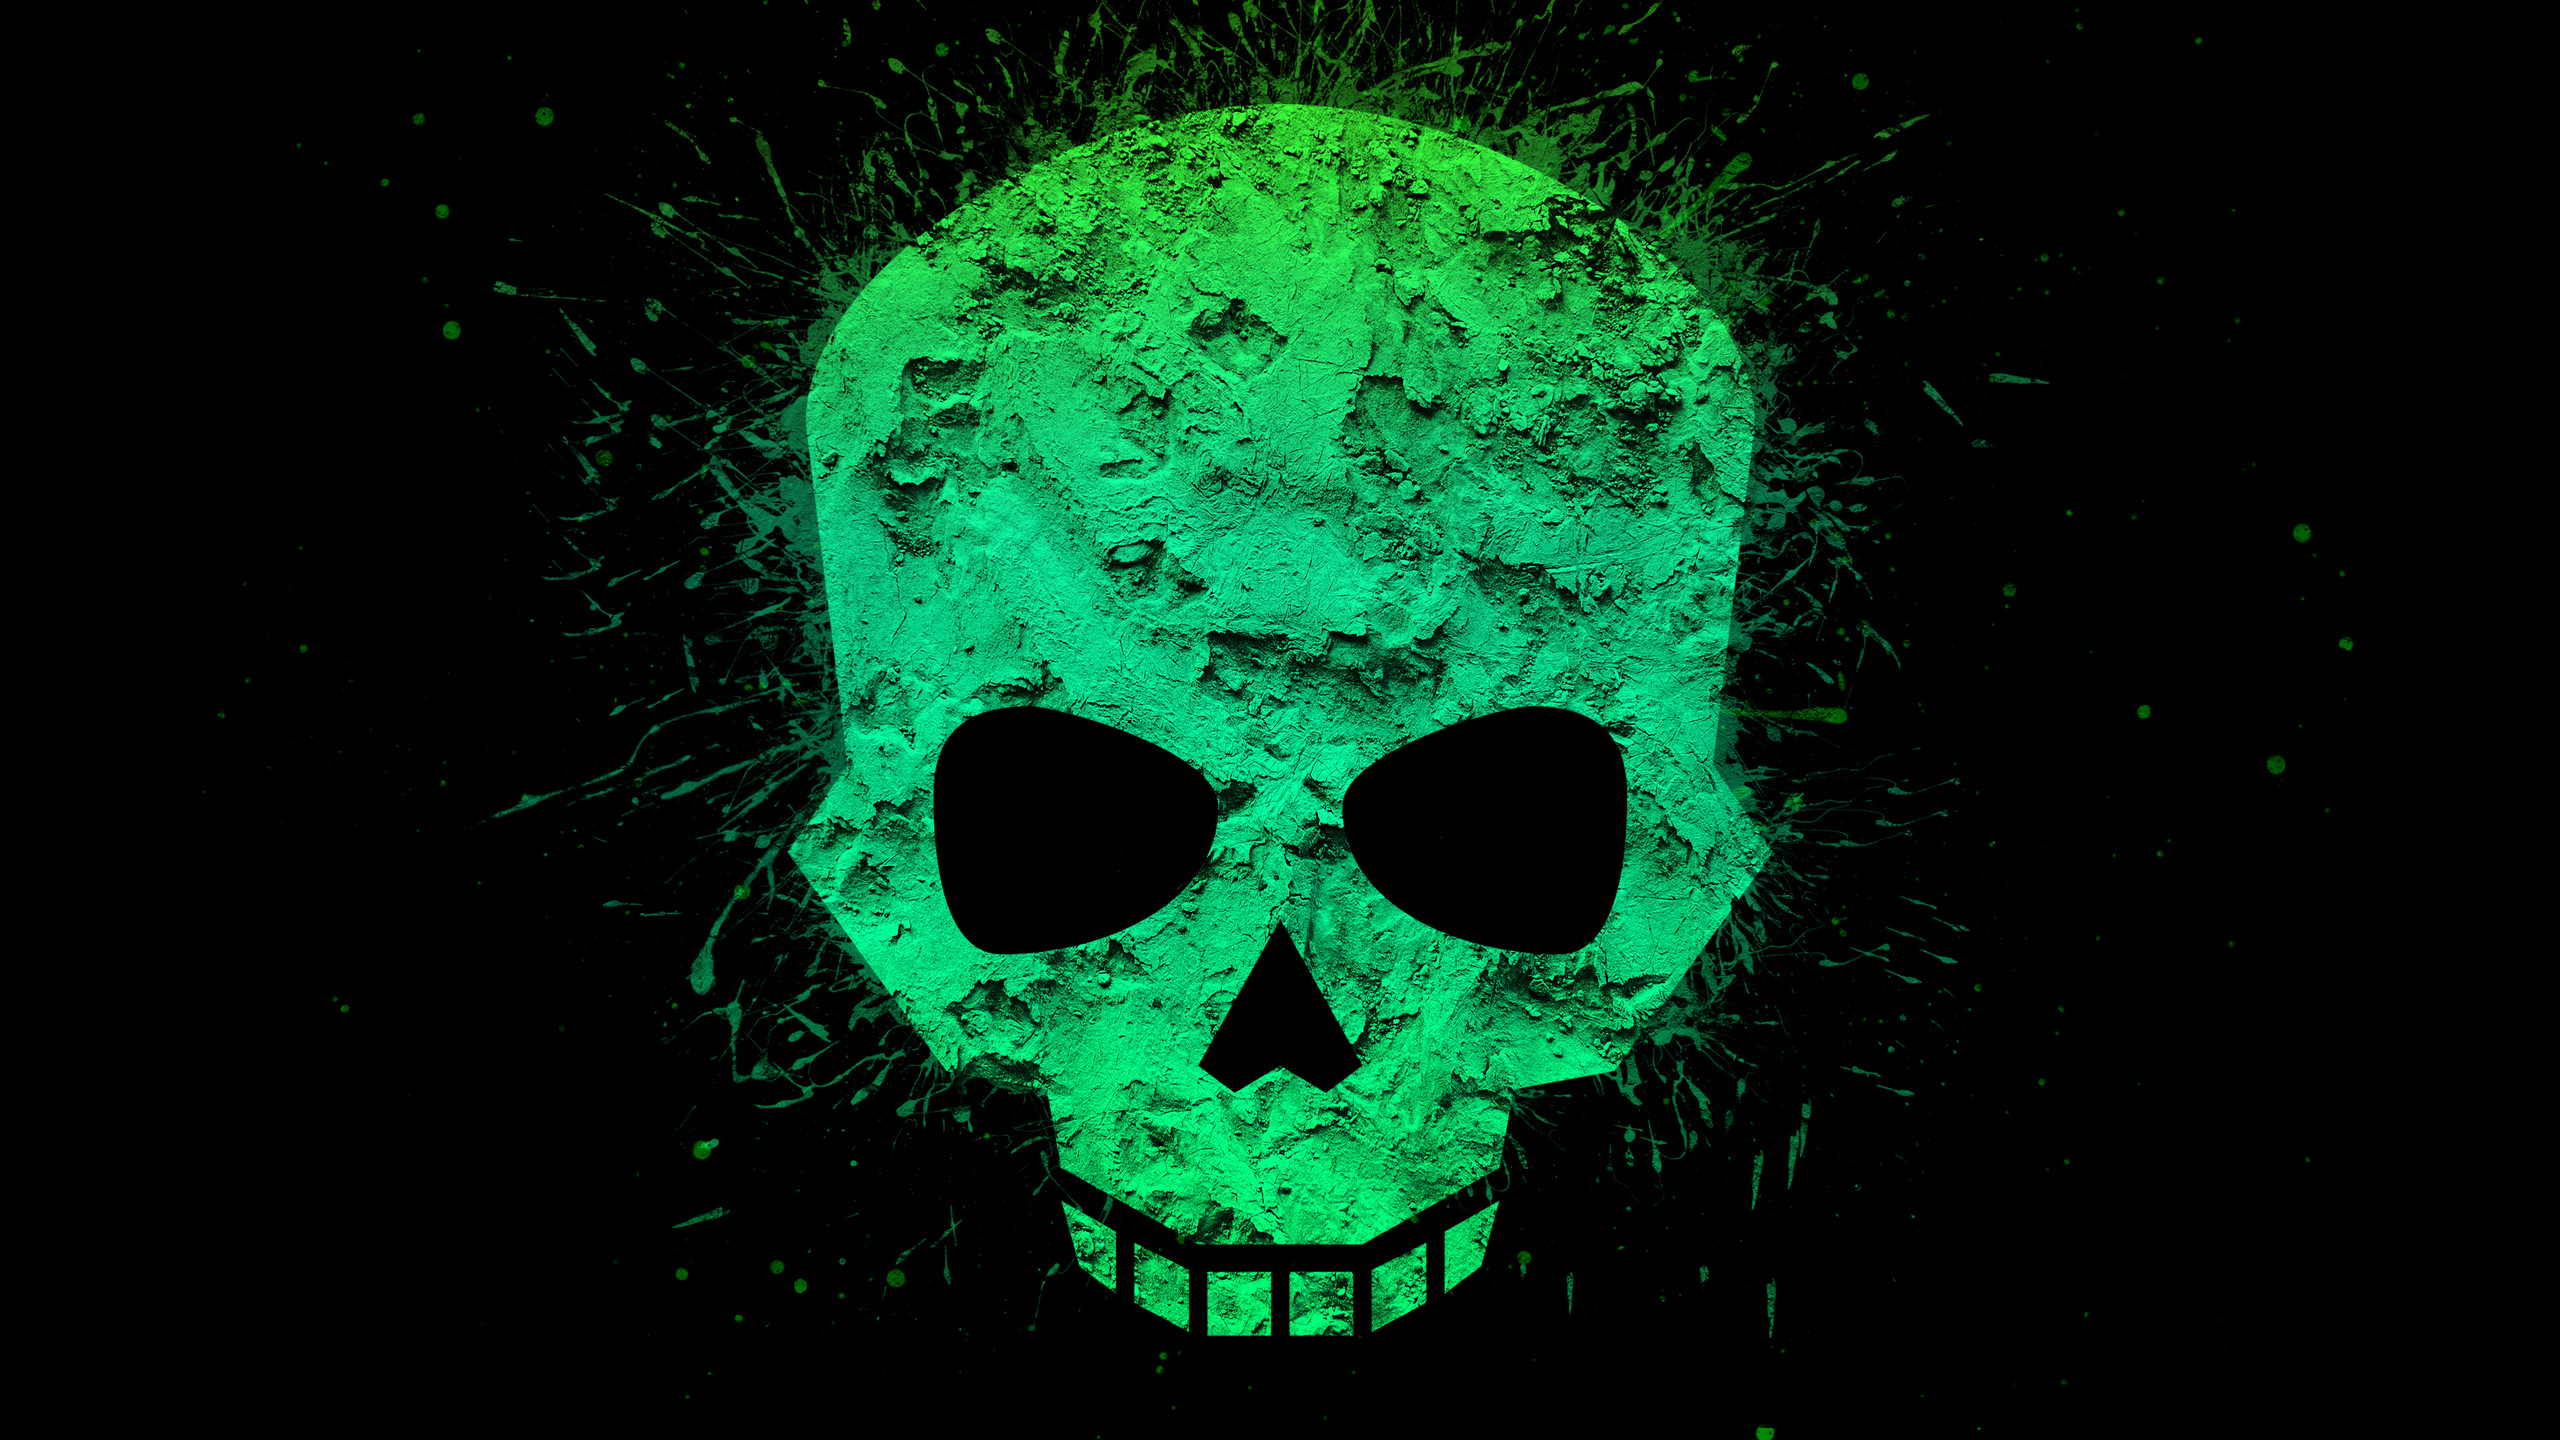 Green Skull 4k In 2560x1440 Resolution. green-skull-4k-ne.jpg. 